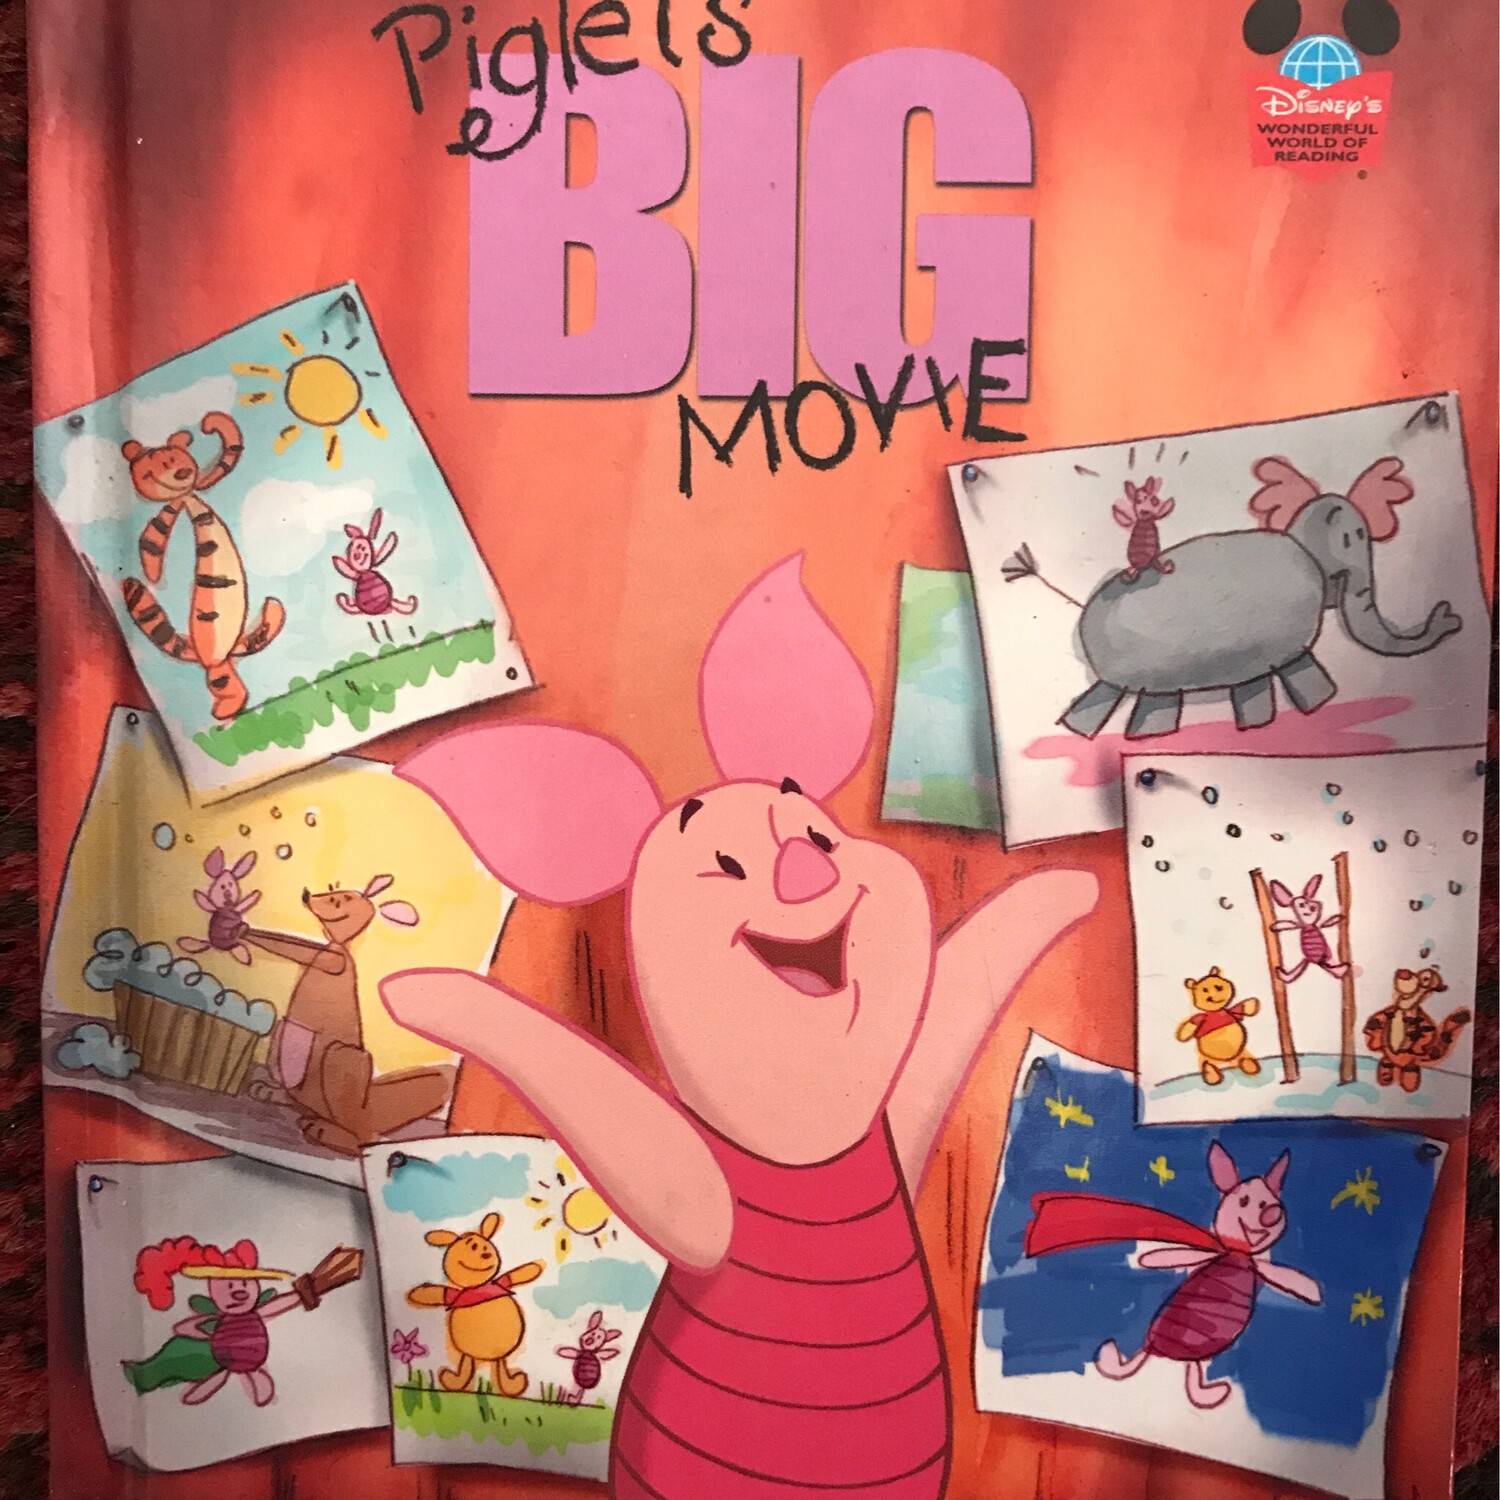 Piglet’s Big Movie, Disney